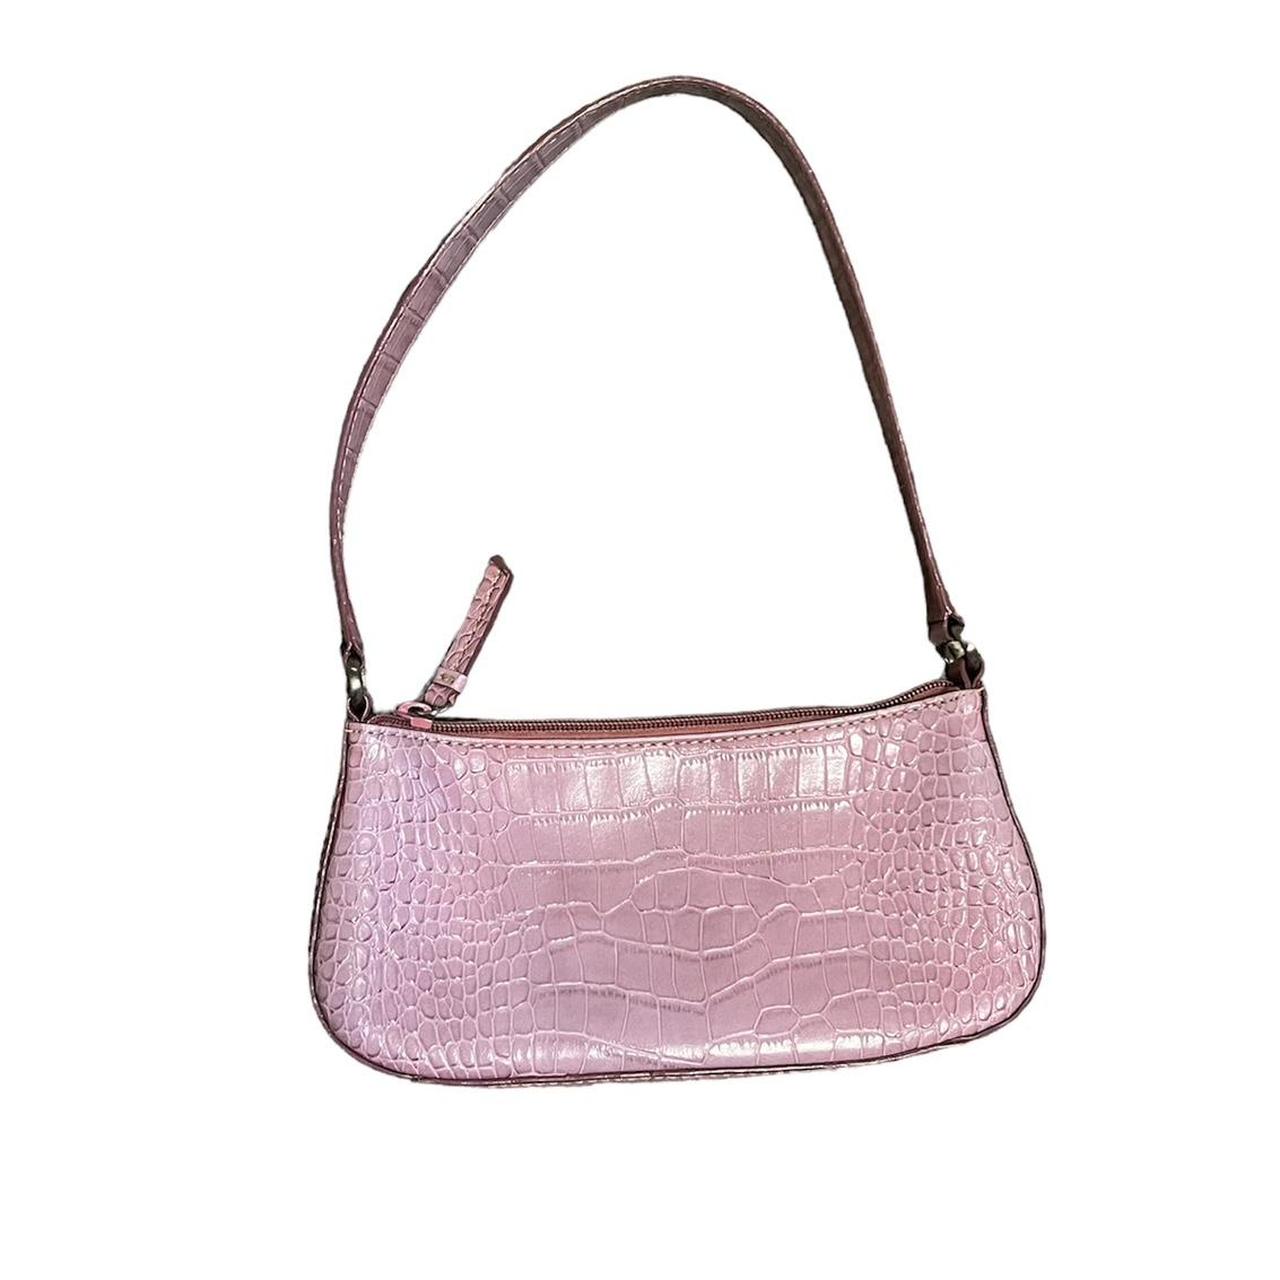 Miche Table Hanger for Handbags Purses - Purple Handbag Shape | eBay